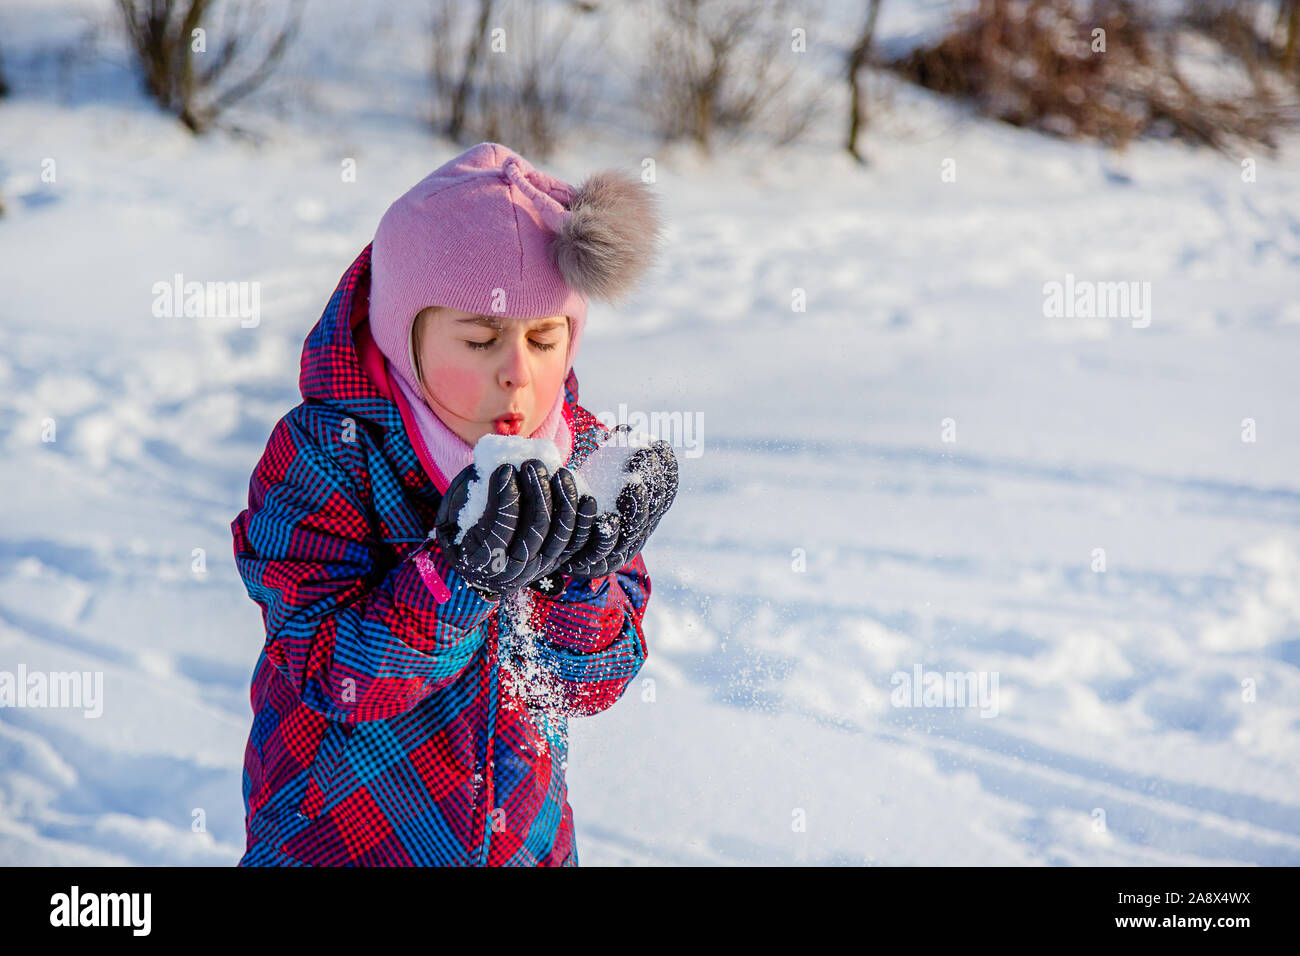 Fröhliches Mädchen wirft Schnee an einem sonnigen Wintertag. Aktive Spiele mit Schnee. Der Winterurlaub. Glückliche Kindheit. Stockfoto